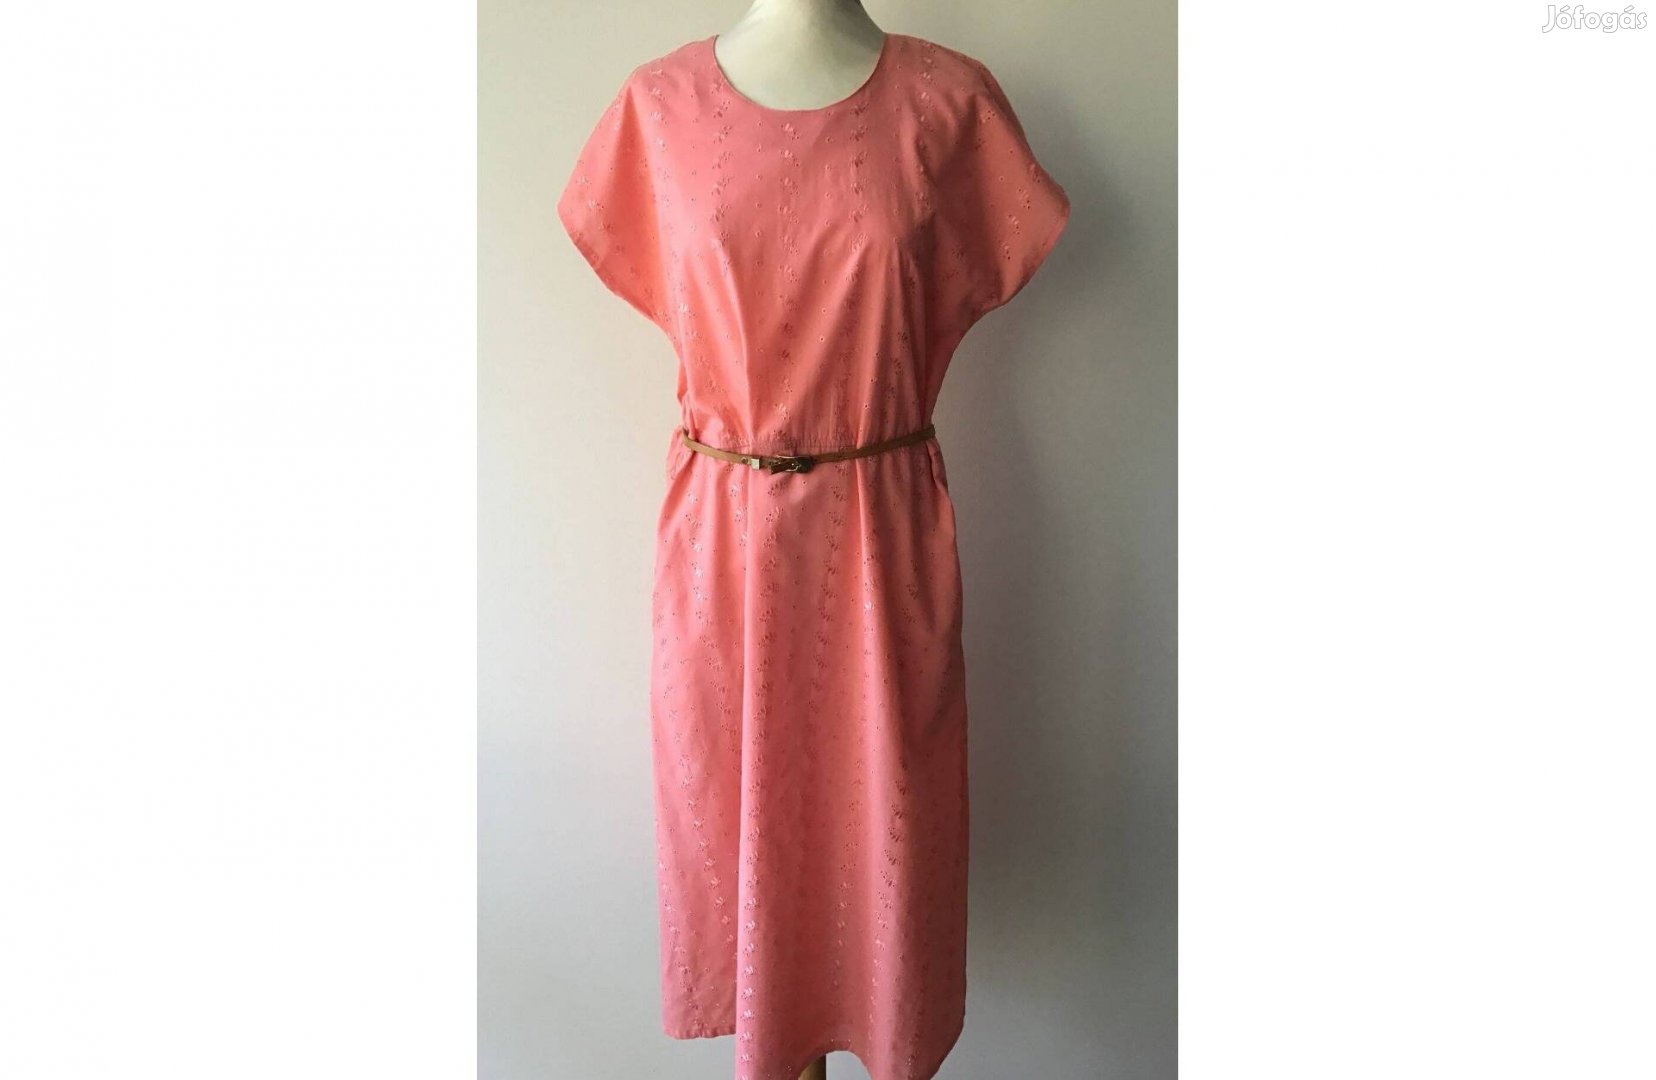 Vintage, zsebes ruha (barackvirág színű, hímzett anyag) 38-40-es